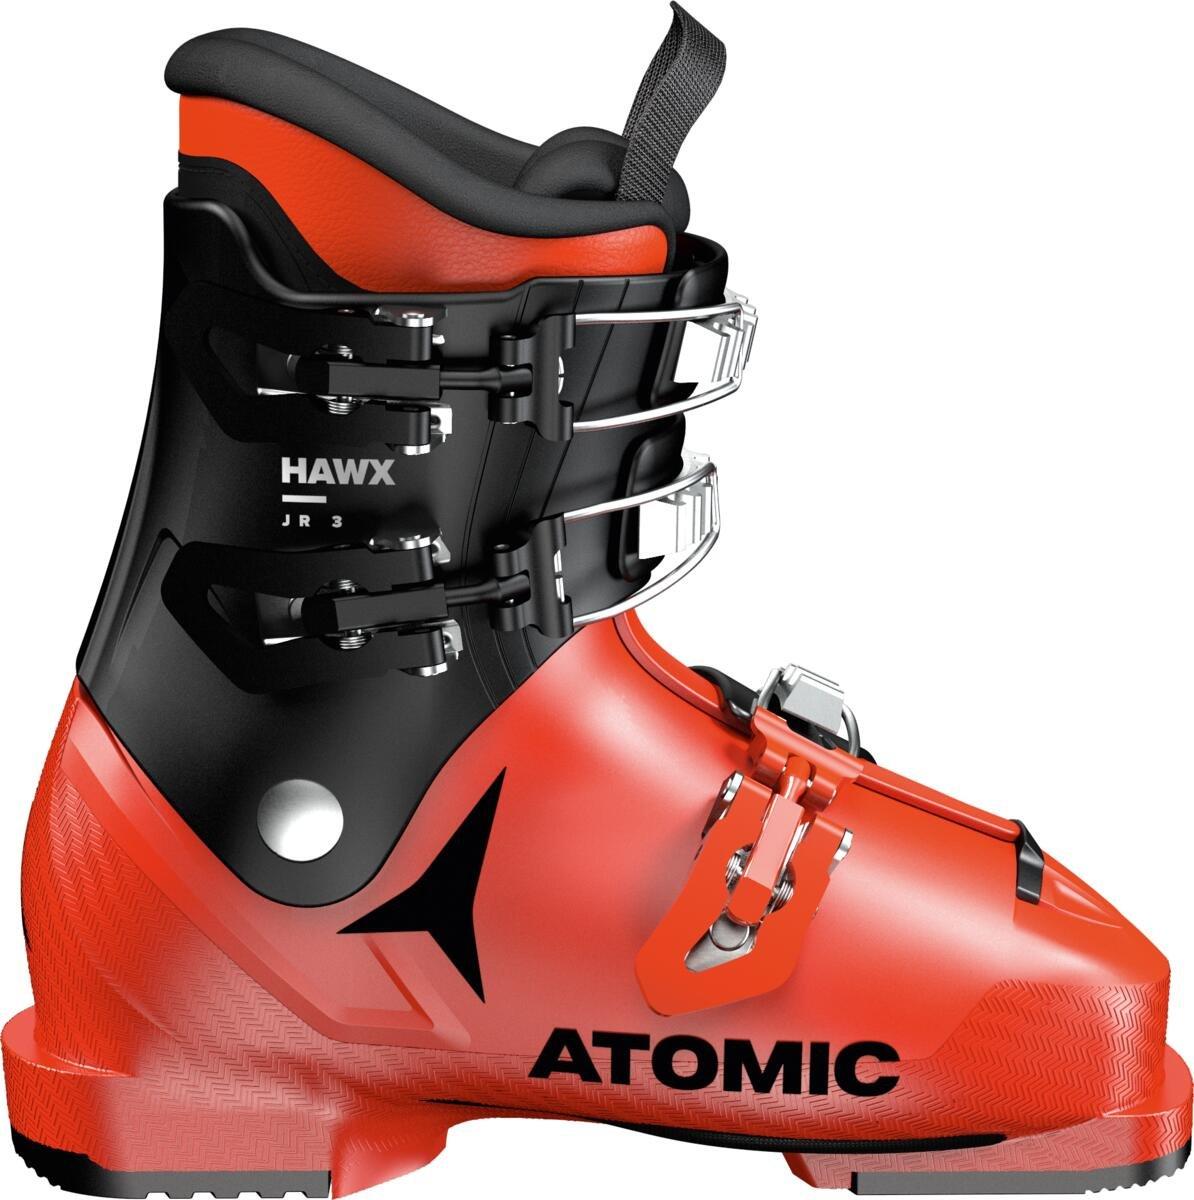 Detské lyžiarky Atomic Hawx 3 Junior Veľkosť: 23 cm